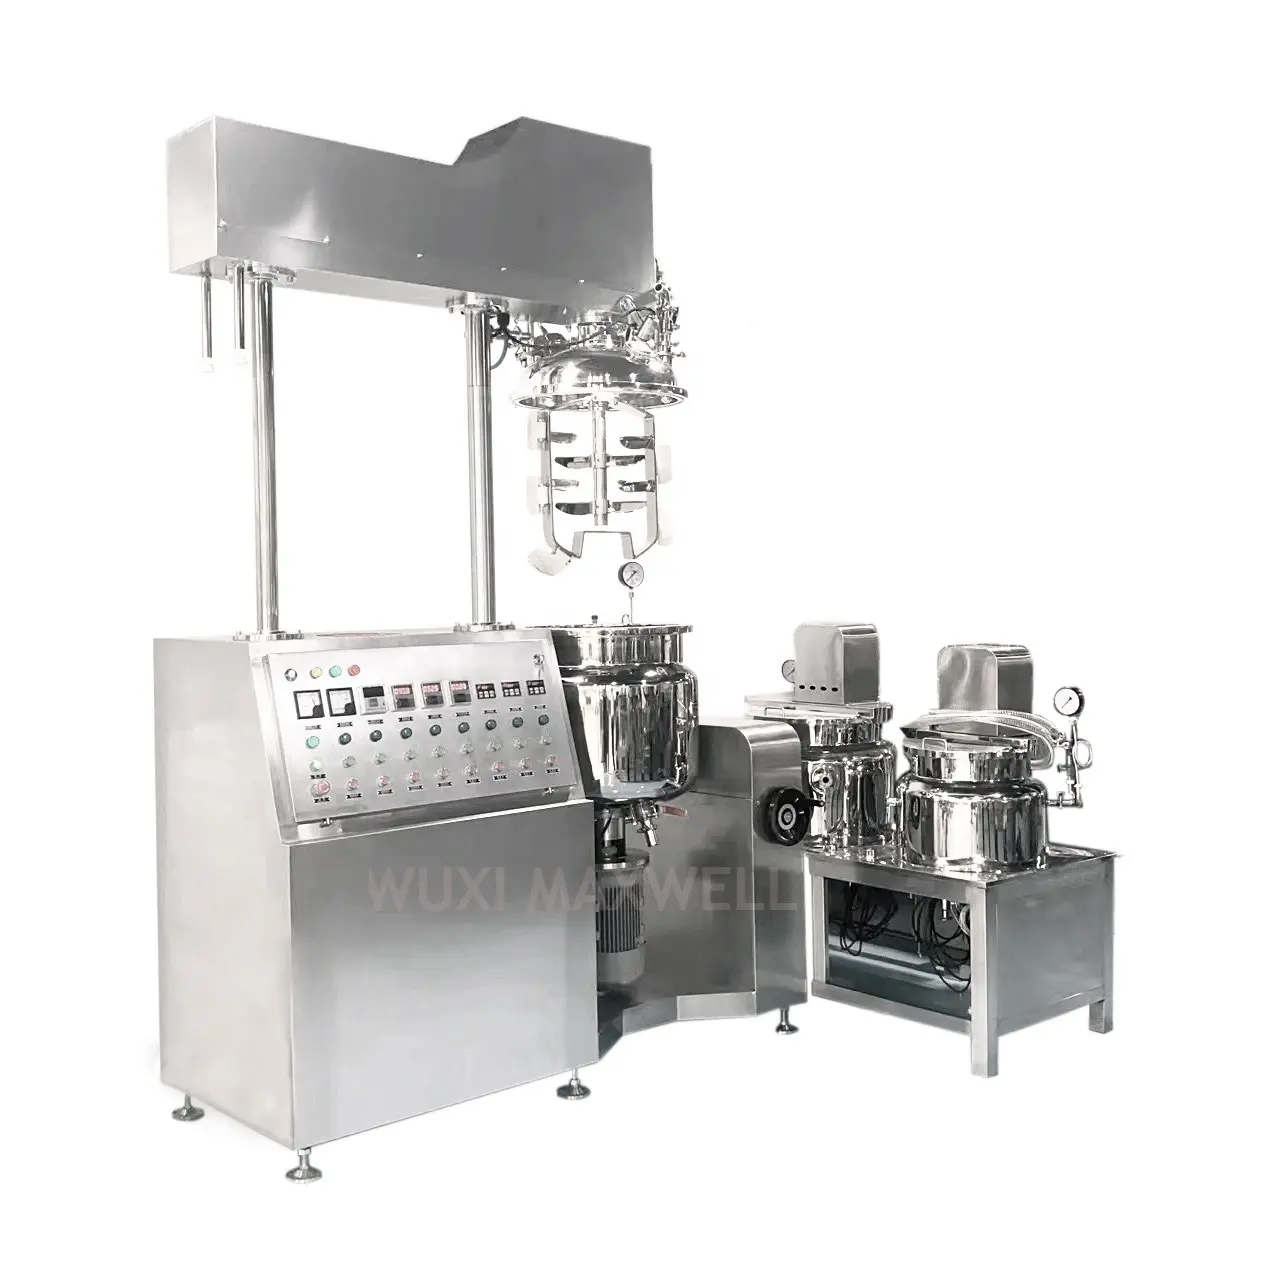 Riscaldamento e miscelazione omogeneizzatore serbatoio emulsionante sottovuoto per miscelatore macchina emulsionante crema e lozione